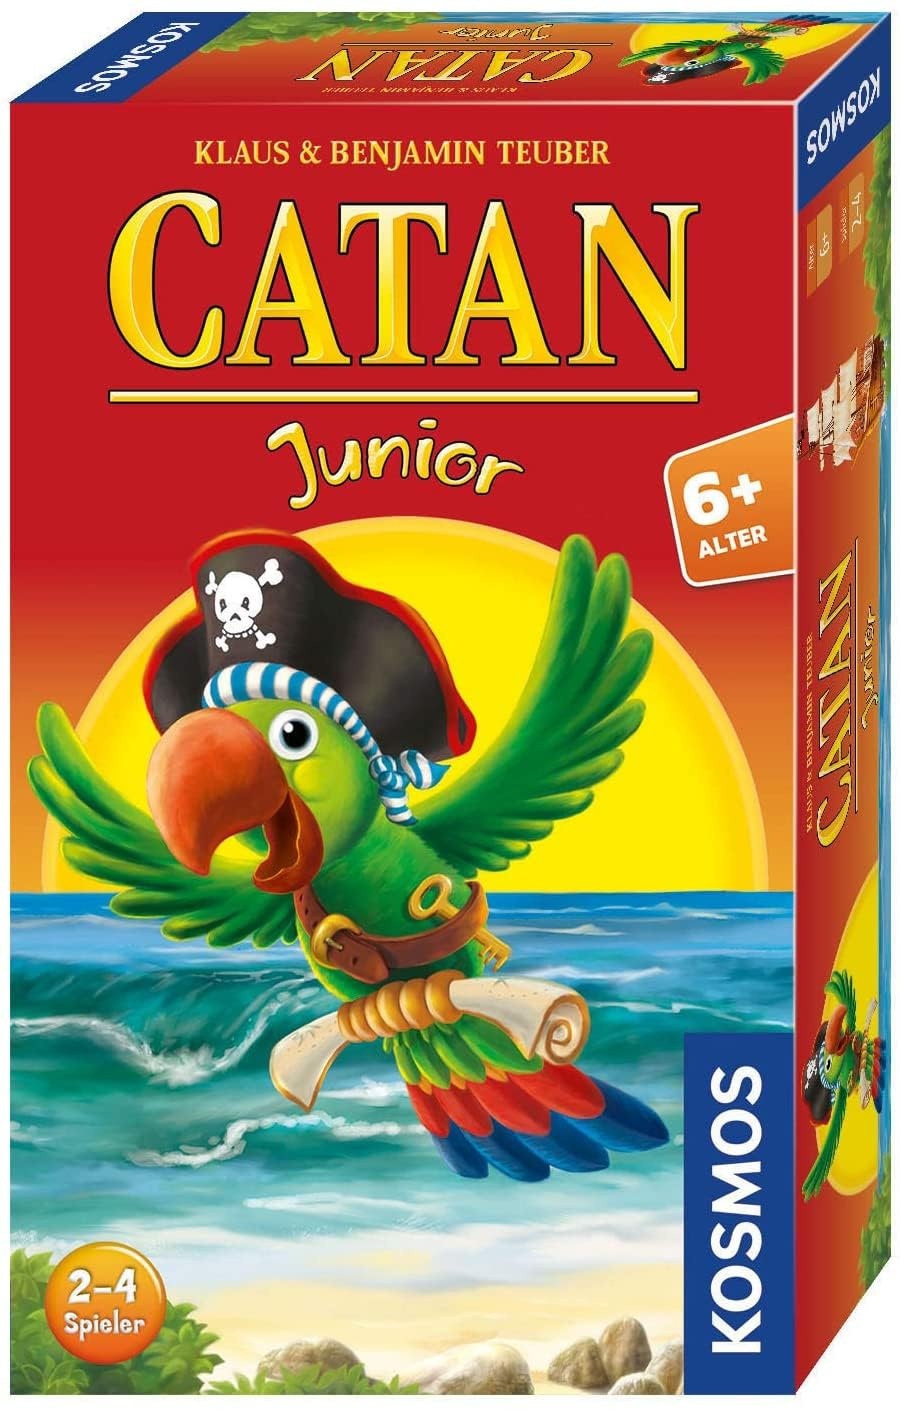 KOSMOS 711474 Catan Junior Mitbringspiel, kompaktes Spiel für Kinder ab 6 Jahren, Strategiespiel für 2-4 Spieler, Geschenk für den Kindergeburtstag, Siedler von Catan